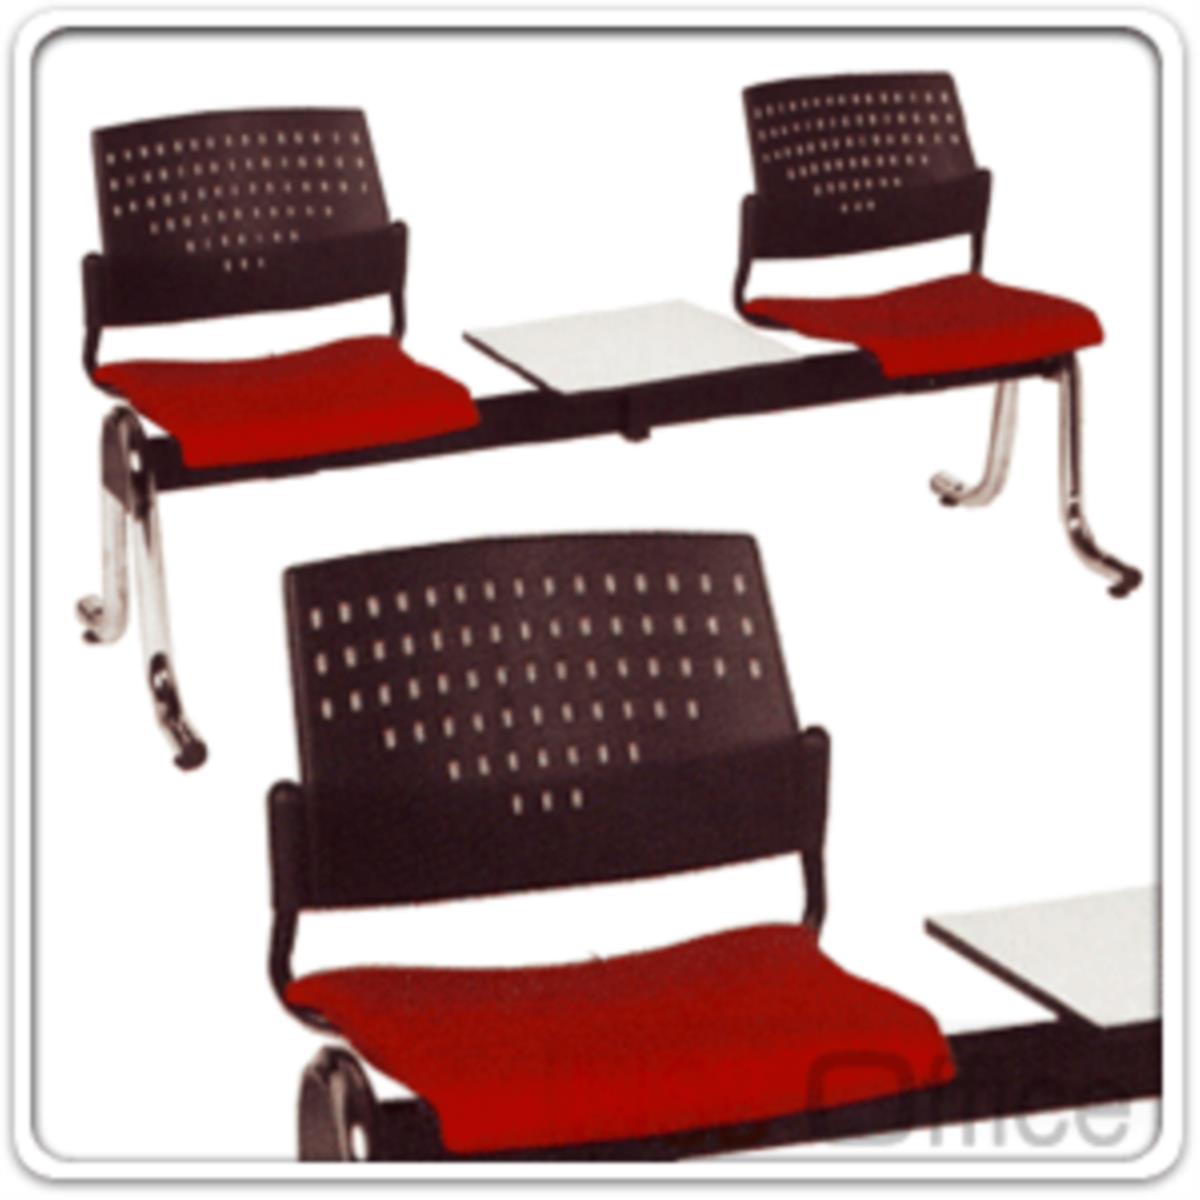 เก้าอี้นั่งคอยเฟรมโพลี่ รุ่น B326 2+1, 3+1 ที่นั่ง มีที่วางของ ขาเหล็กโครเมี่ยม